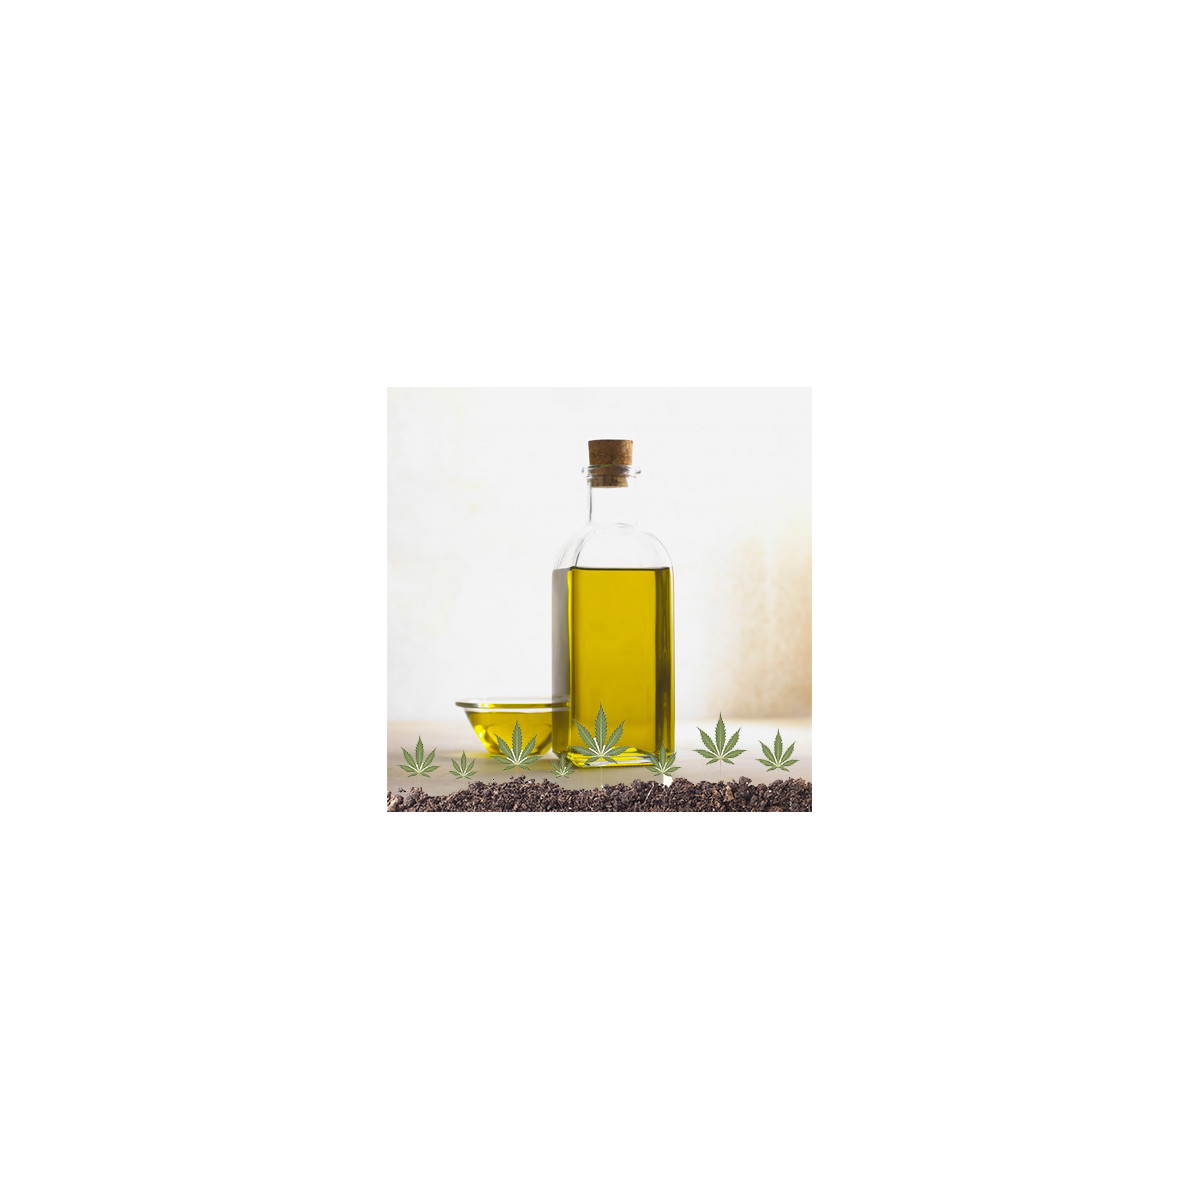 Olio di semi di canapa BIO artigianale di alta qualità 250 ml - MADE IN ITALY